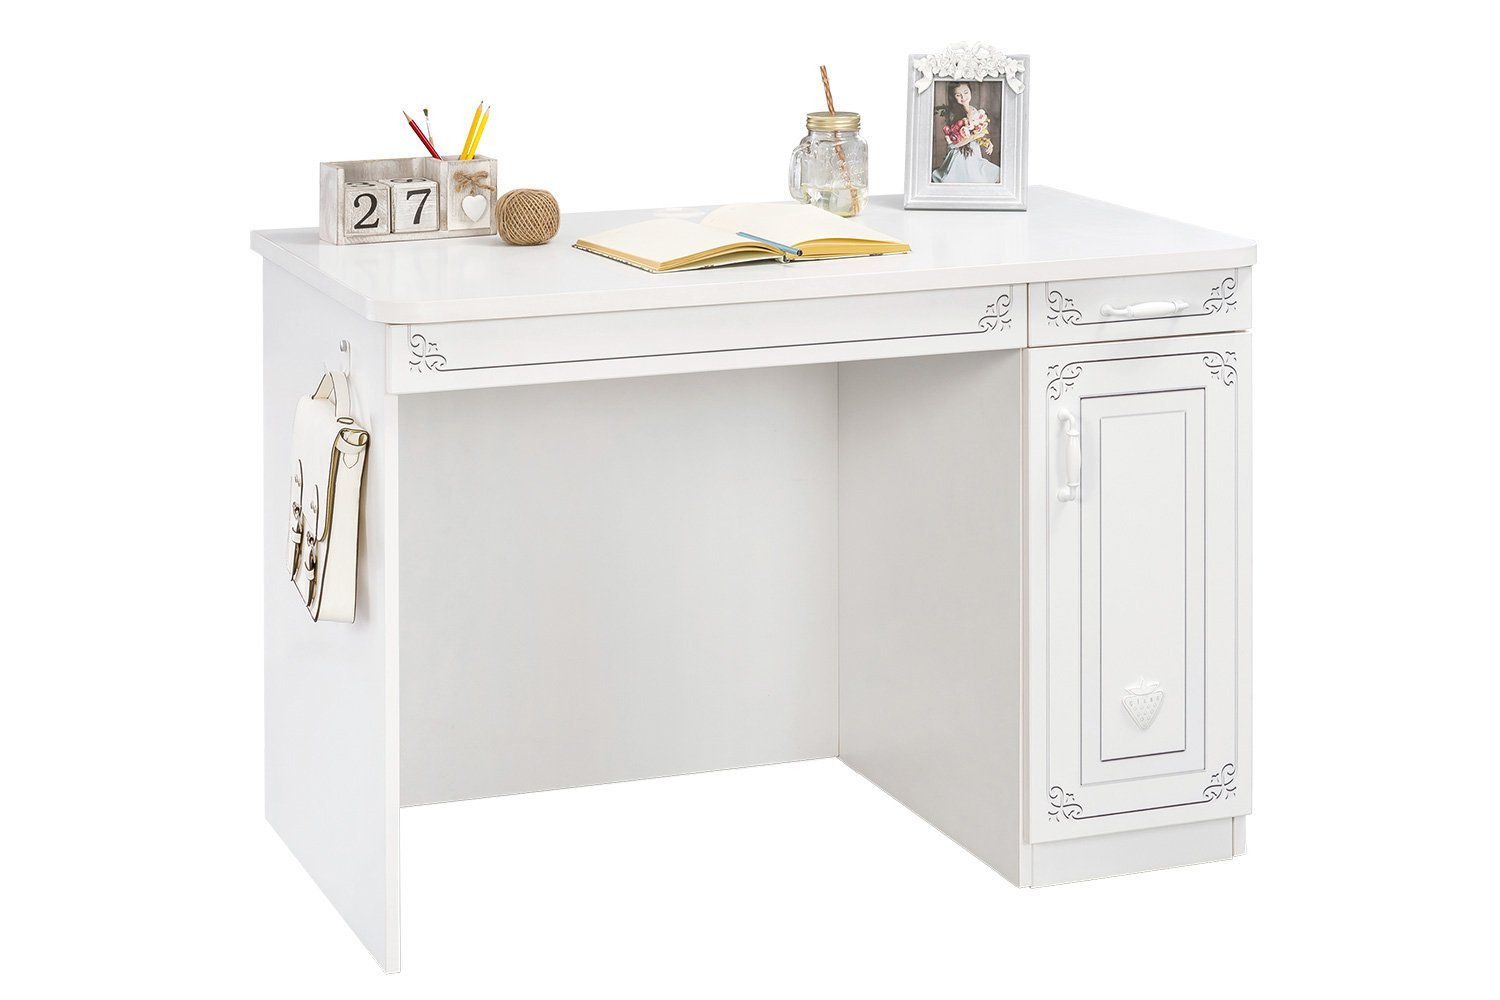 письменный стол белый красивый для девочки